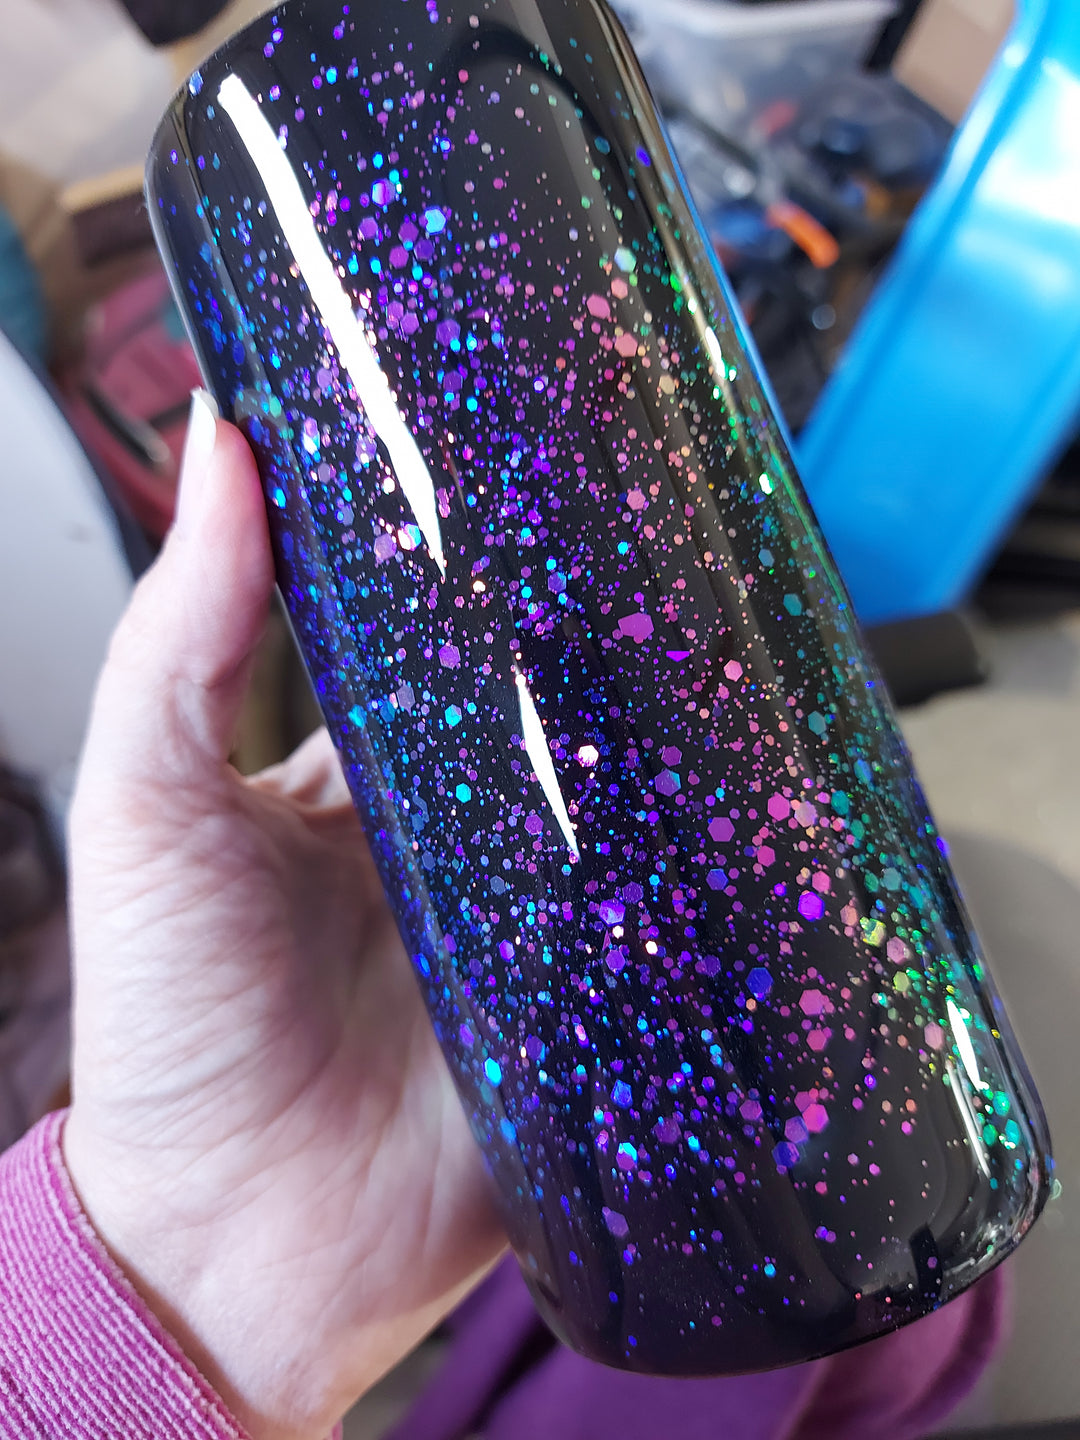 Plumtastic Glitter in a bottle